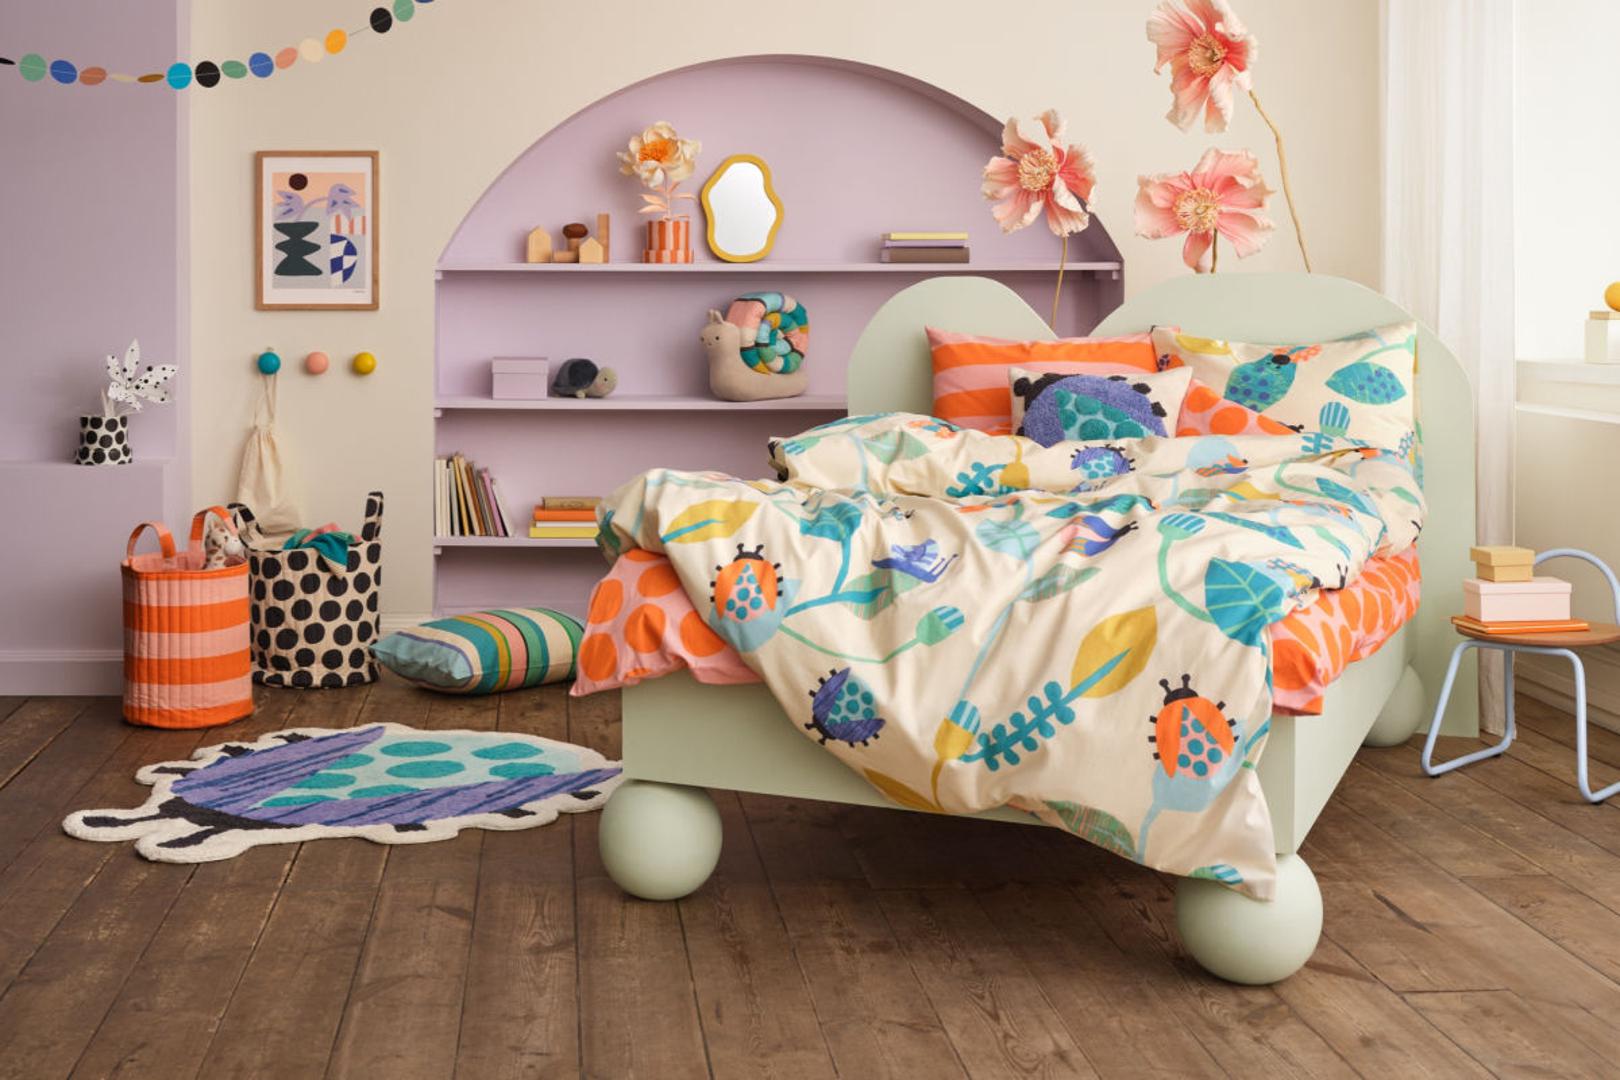 Novo u ponudi - krevet koji raste skupa s dijetetom, atraktivne police i posteljina koja osvaja na prvu. Cijena kreće od 5,99 eura naviše